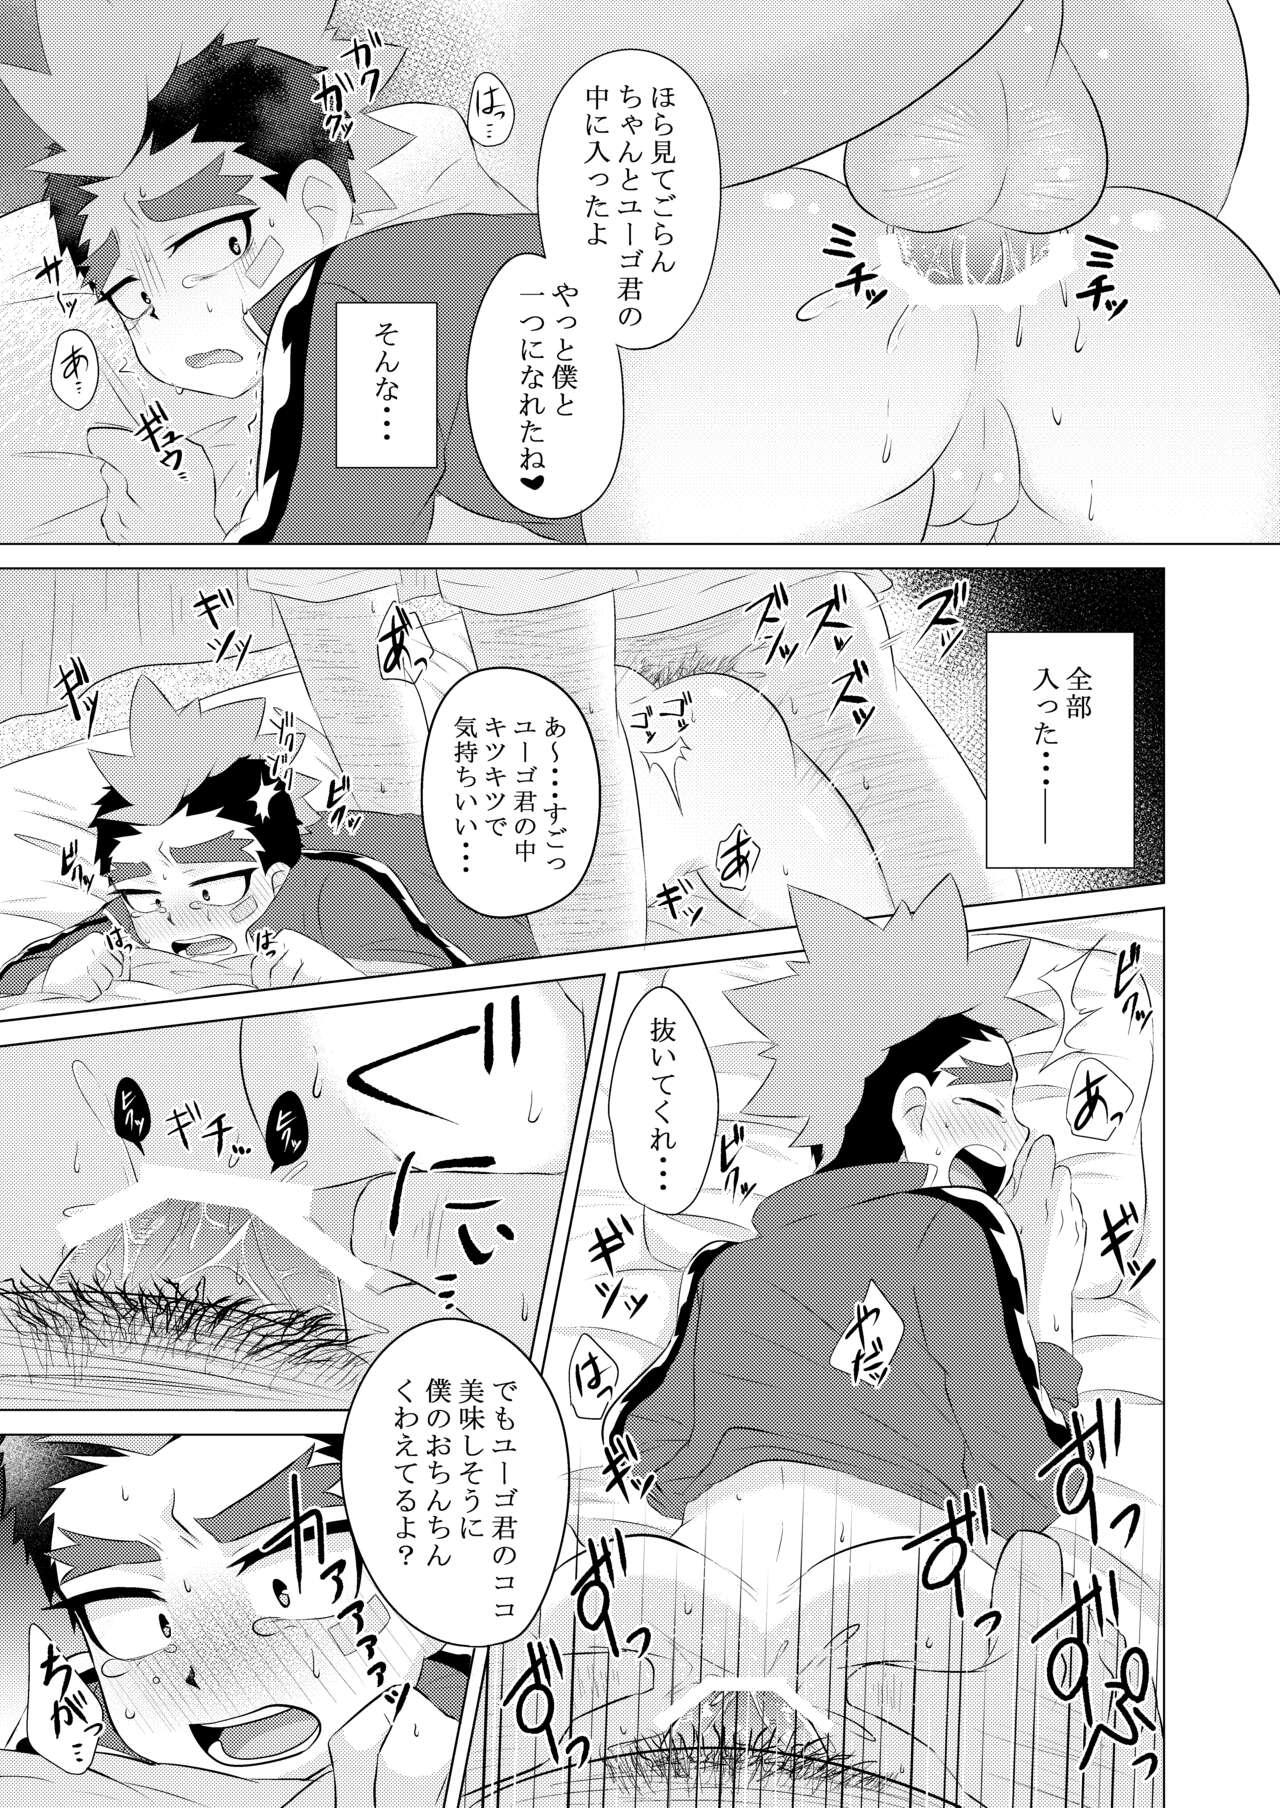 Pool Tokenai Kubiwa - Beyblade Monstercock - Page 10